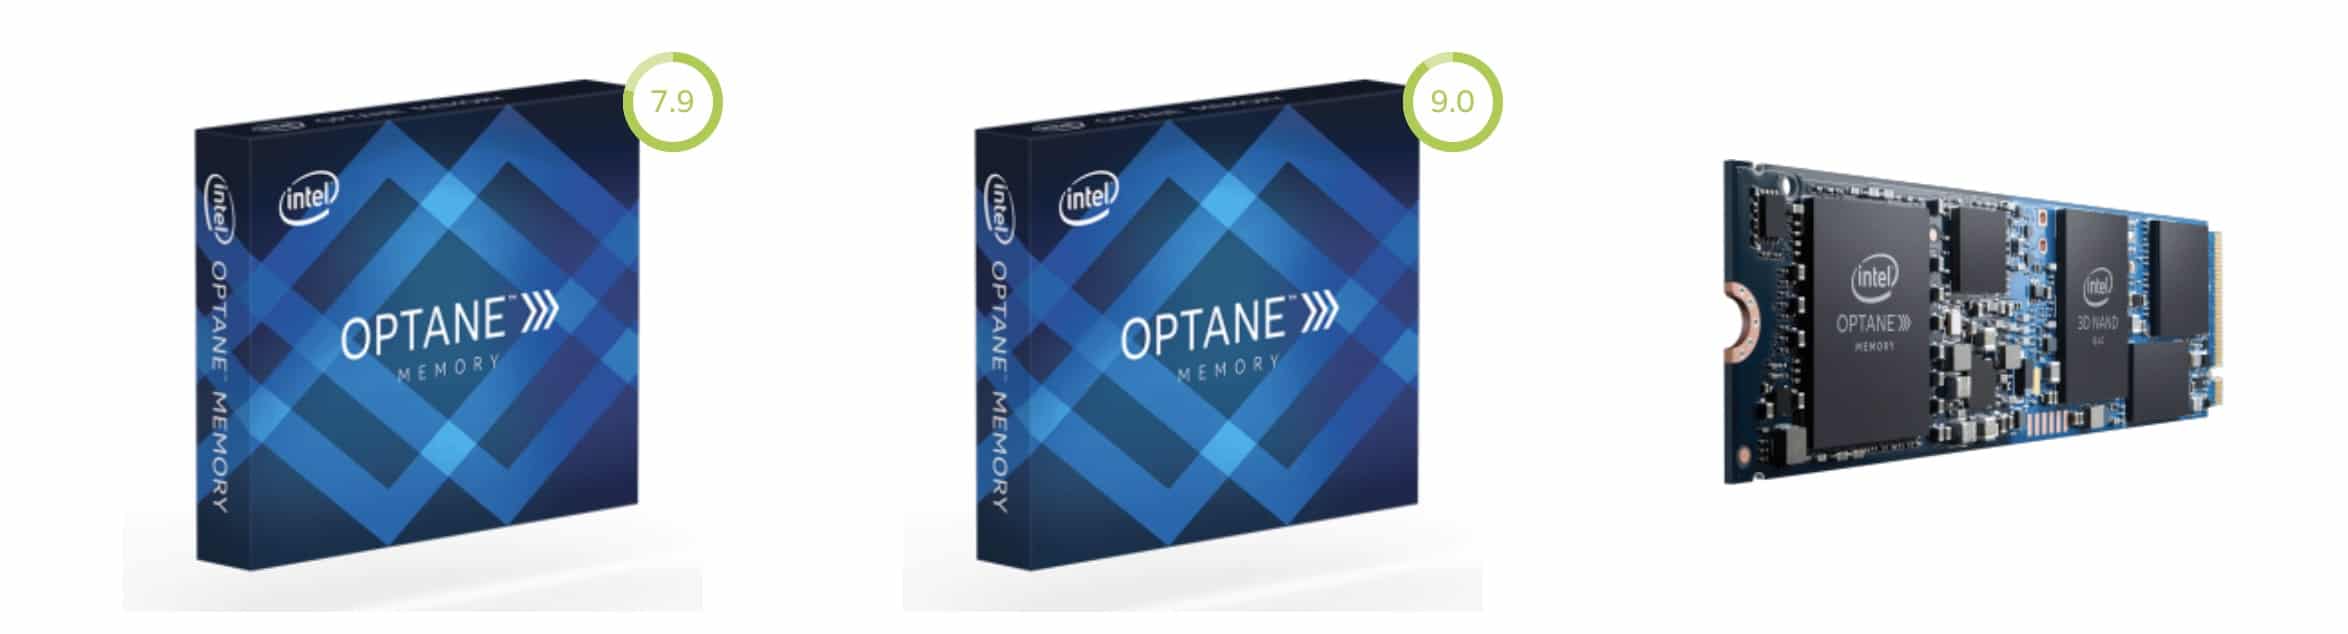 Intel tiết lộ Optane Memory H10, tối ưu cho laptop, máy tính nhỏ gọn